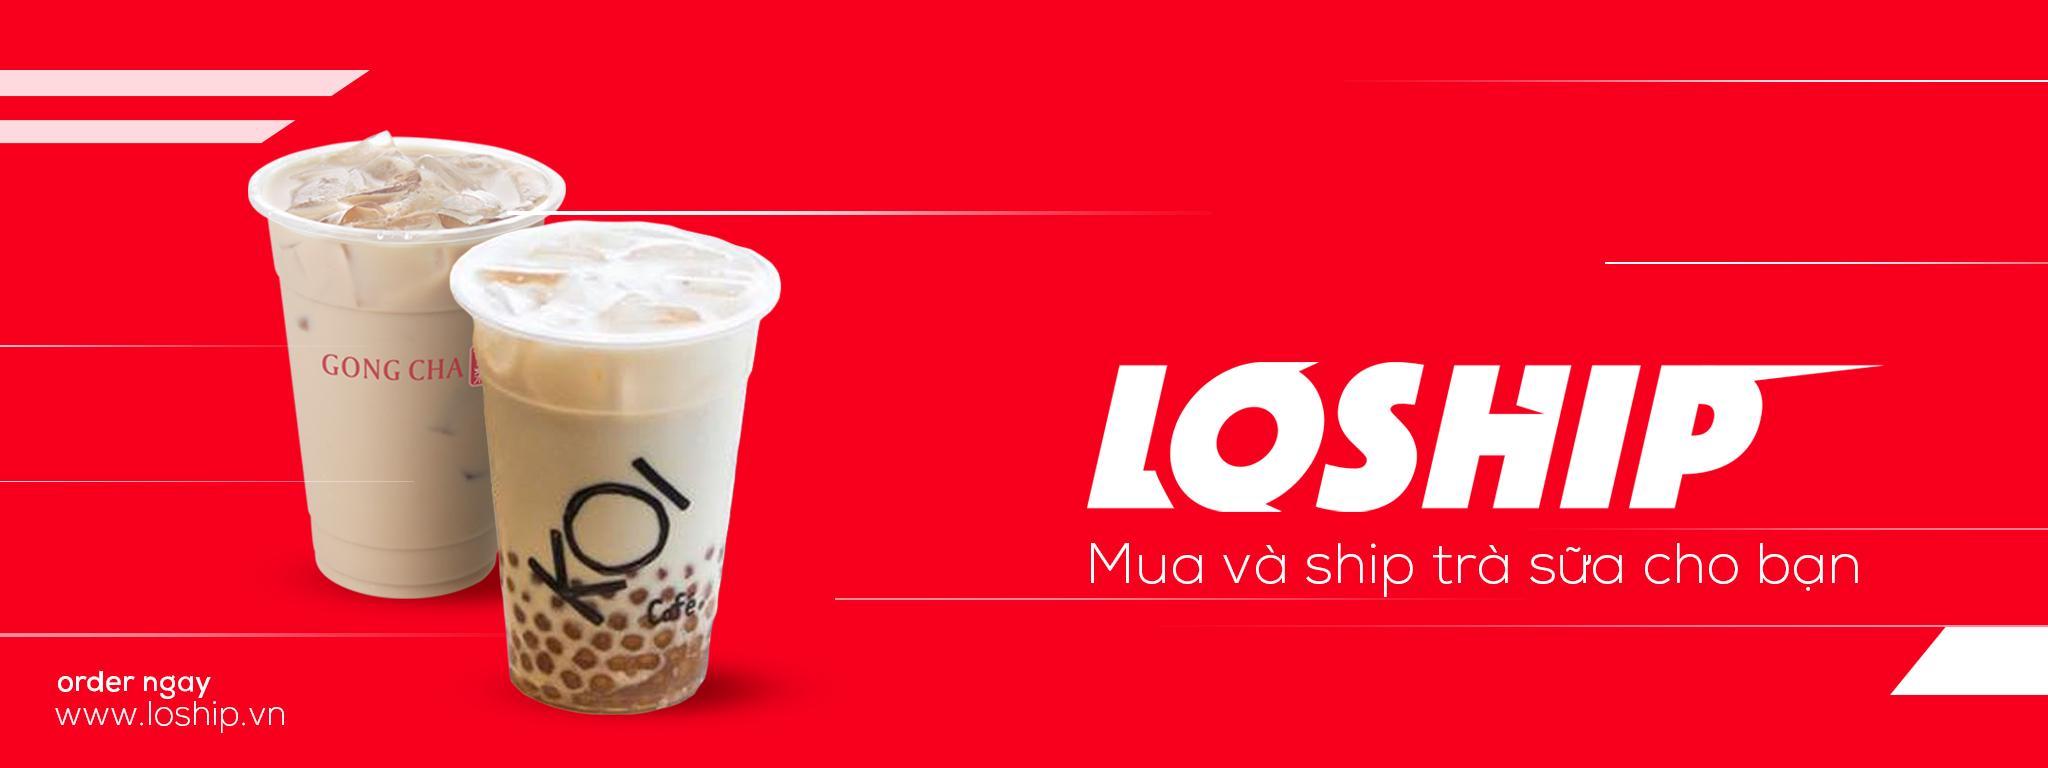 Đè bẹp cơn đói và cơn khát trà sữa với dịch vụ giao đồ ăn “chớp nhoáng” của Loship.vn